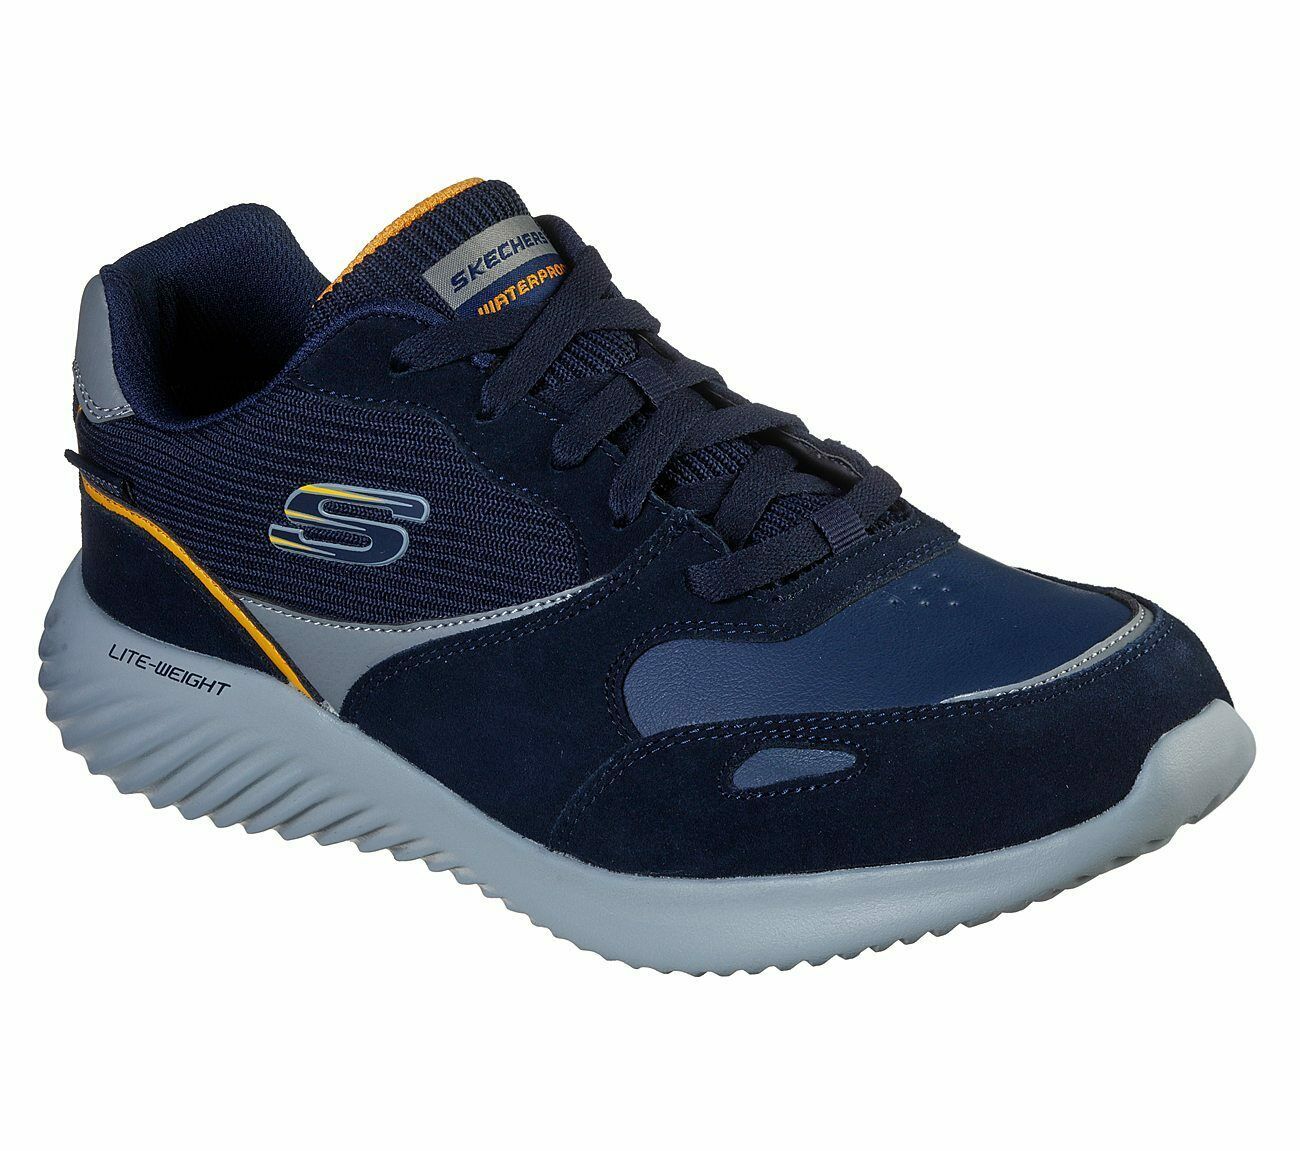 Skechers Navy shoes Men's Memory Foam Sport Comfort Casual waterproof ...